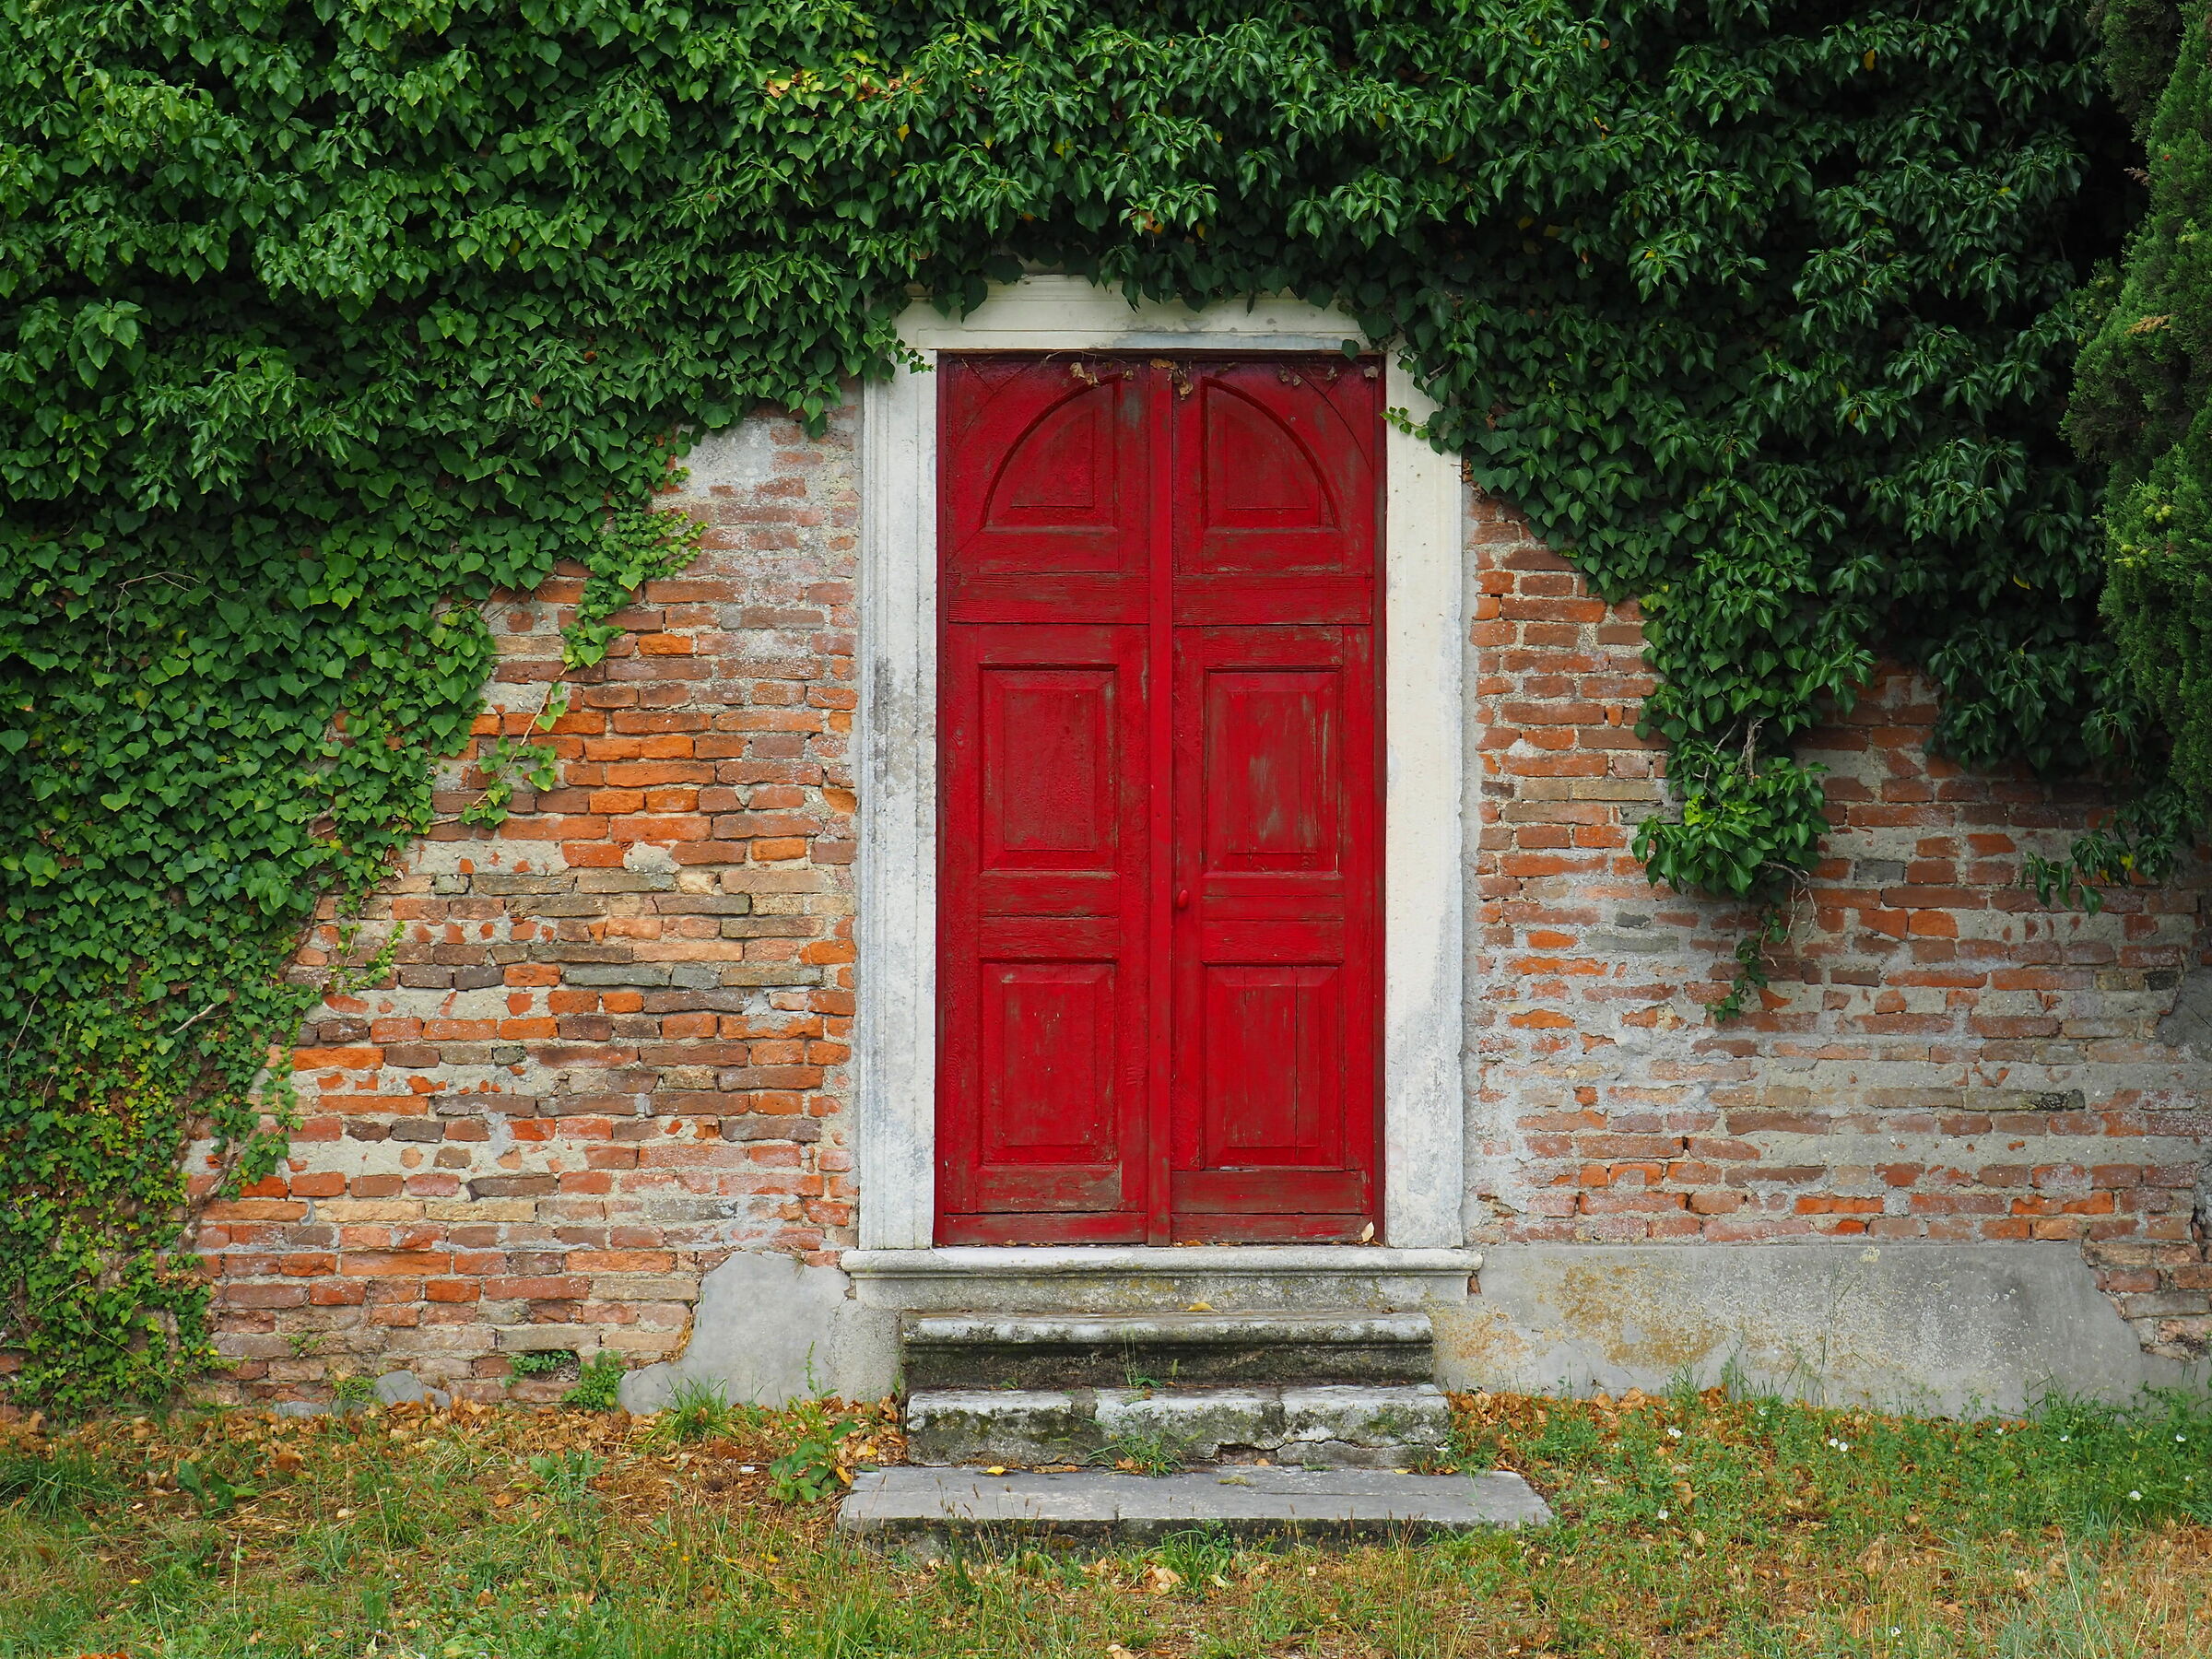 the red door...